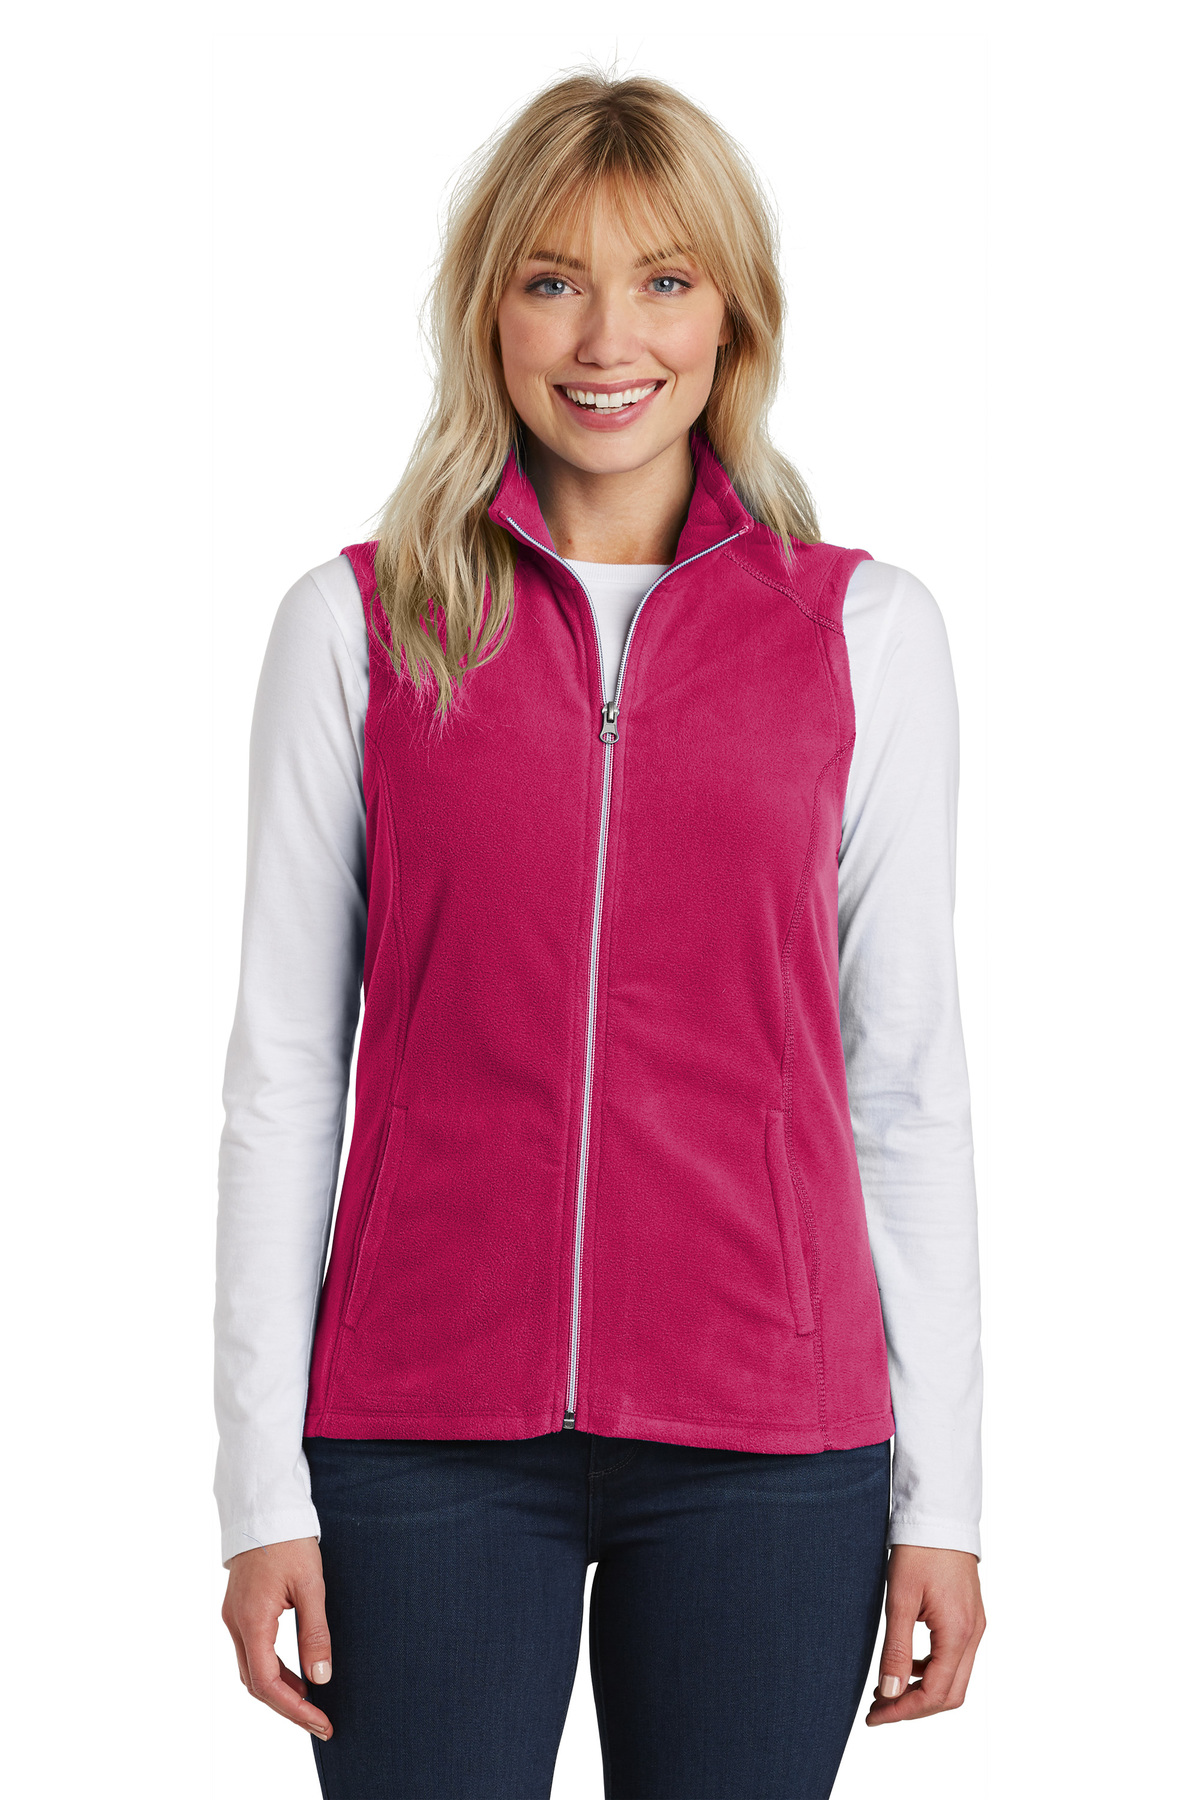 L226 - Port Authority® Ladies Microfleece Vest